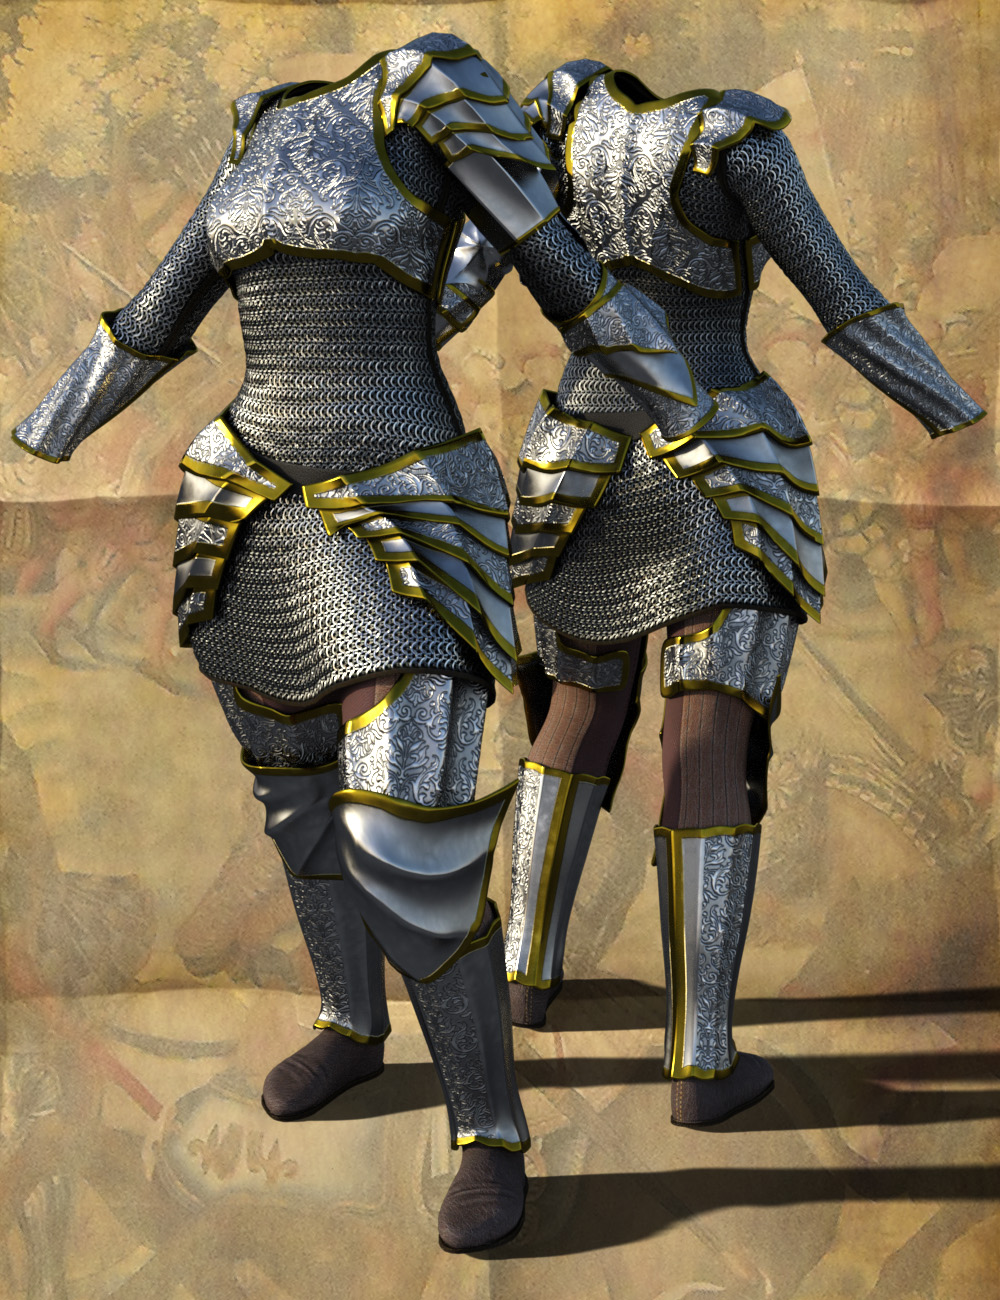 Mercenary Knight by: Valandar, 3D Models by Daz 3D